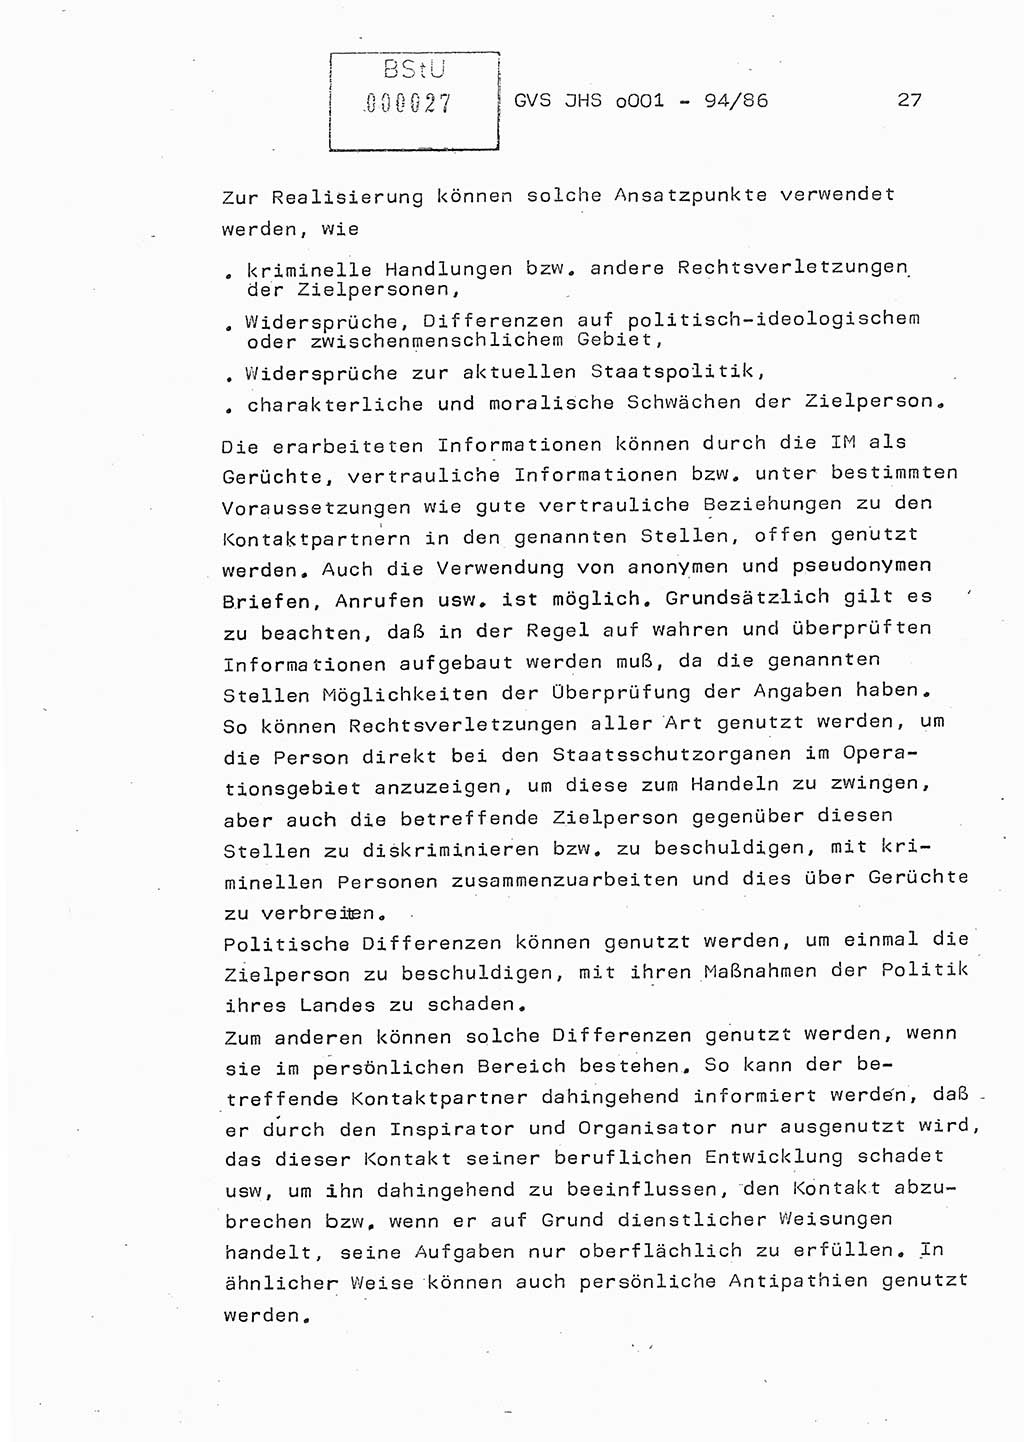 Diplomarbeit Oberleutnant Volkmar Pechmann (HA ⅩⅩ/5), Ministerium für Staatssicherheit (MfS) [Deutsche Demokratische Republik (DDR)], Juristische Hochschule (JHS), Geheime Verschlußsache (GVS) o001-94/86, Potsdam 1986, Blatt 27 (Dipl.-Arb. MfS DDR JHS GVS o001-94/86 1986, Bl. 27)